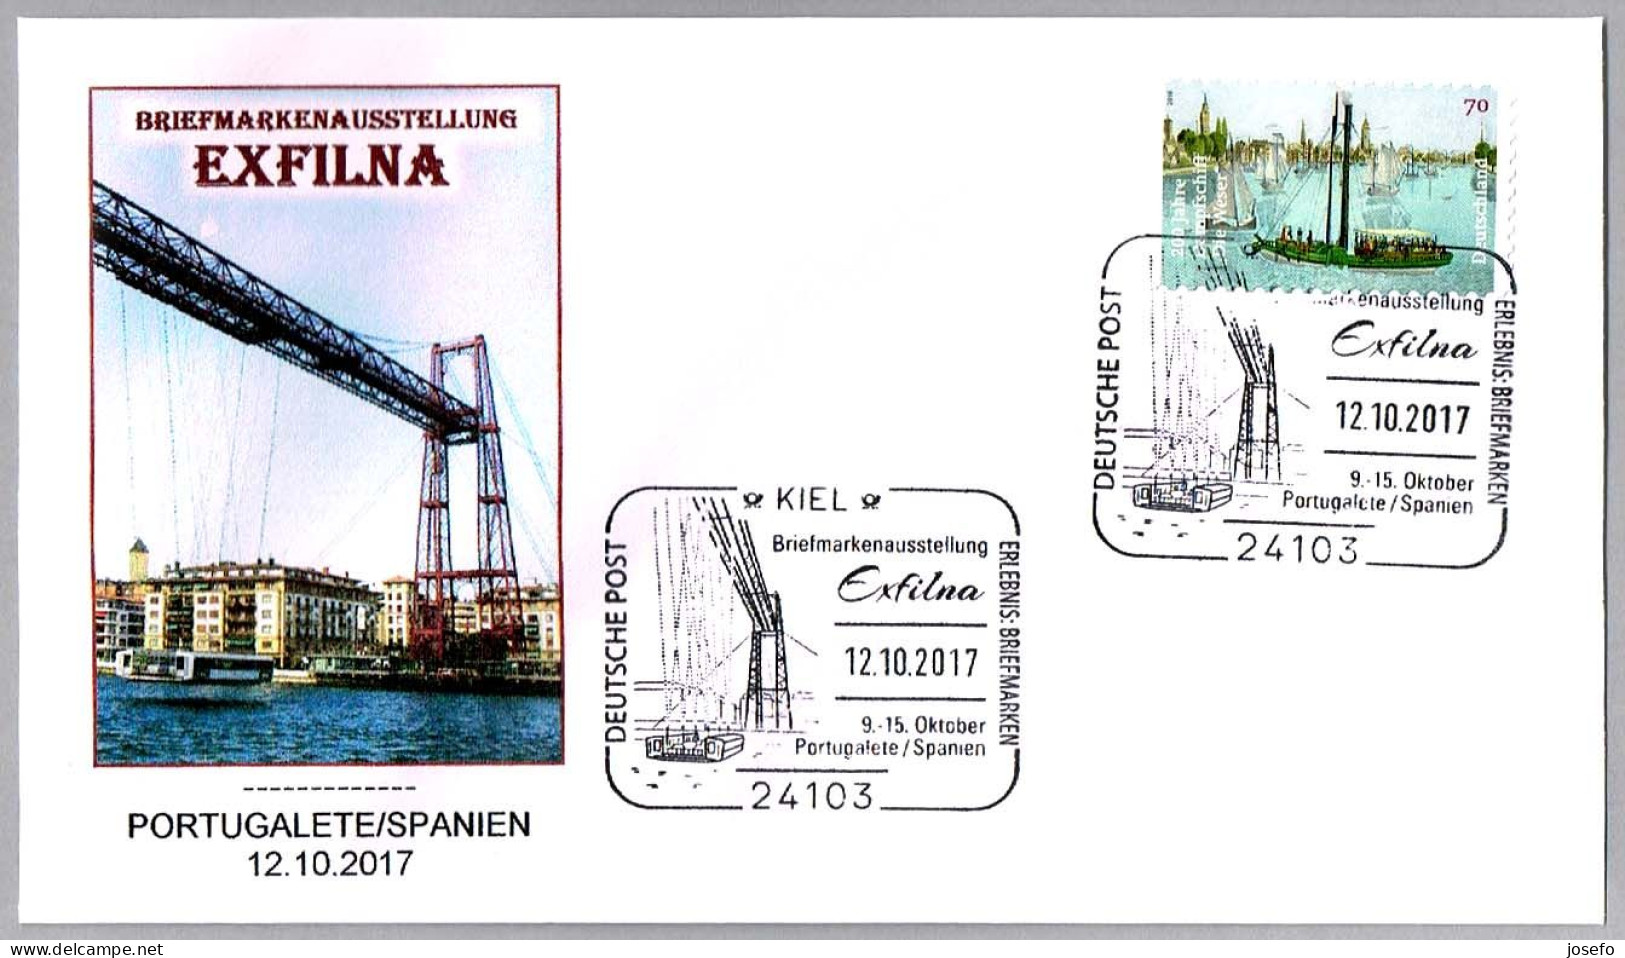 CORREO ALEMAN EN EXFILNA 2017 - Puente Transbordador - Transbordeur. Portugalete 2017 - Puentes